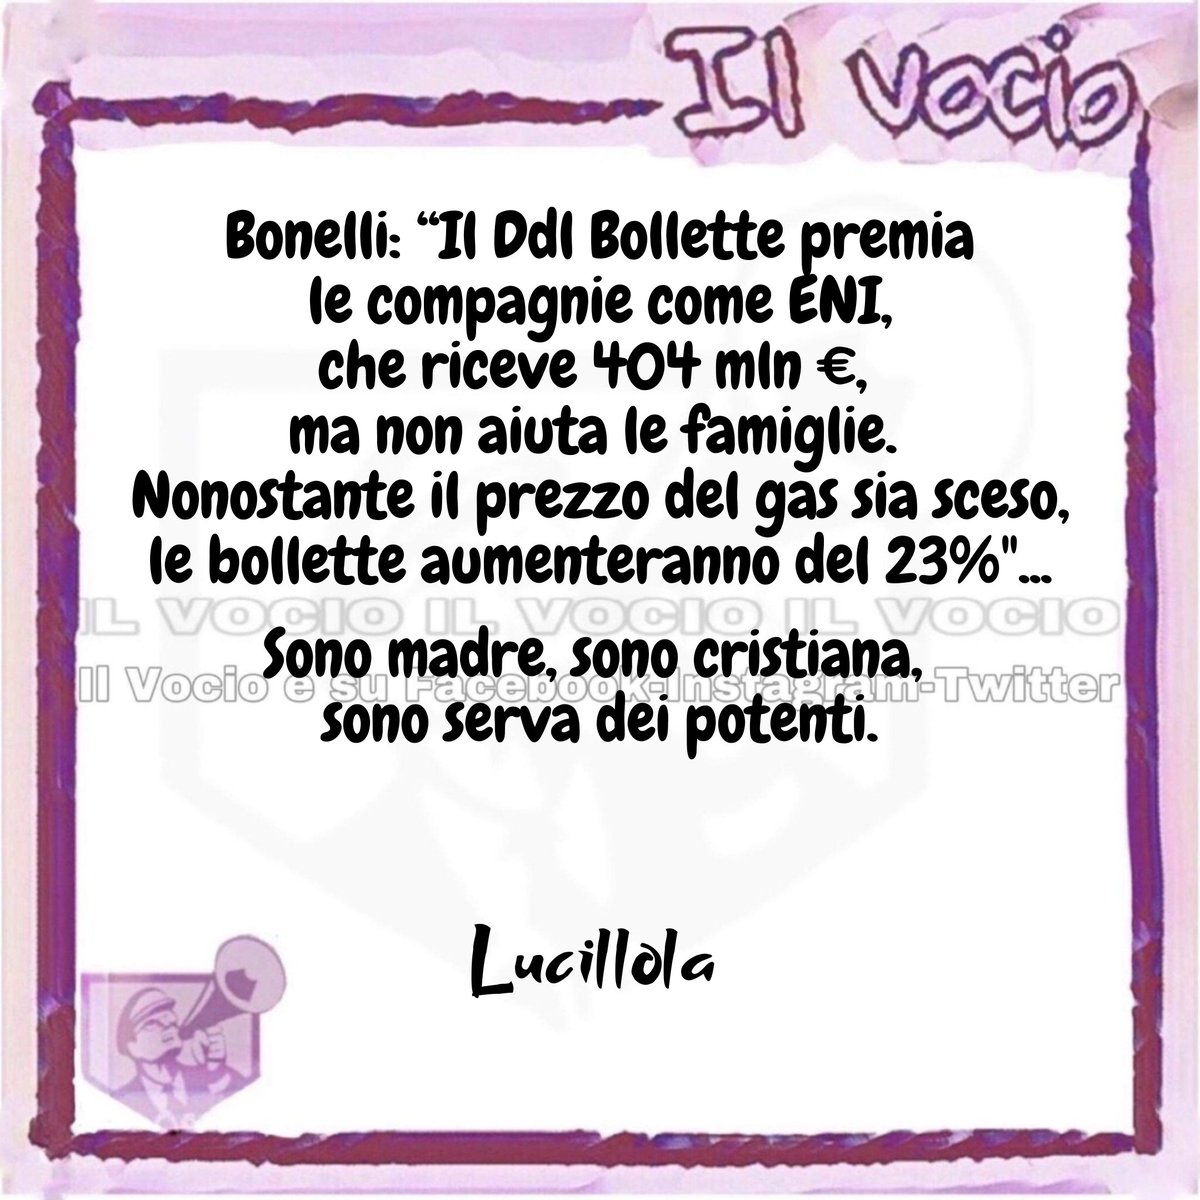 Lucillola @LucillaMasini #ilvocio #28maggio ilvocio #Bonelli #bollette #Eni #gas #Governo #Meloni #GovernoDellaVergogna